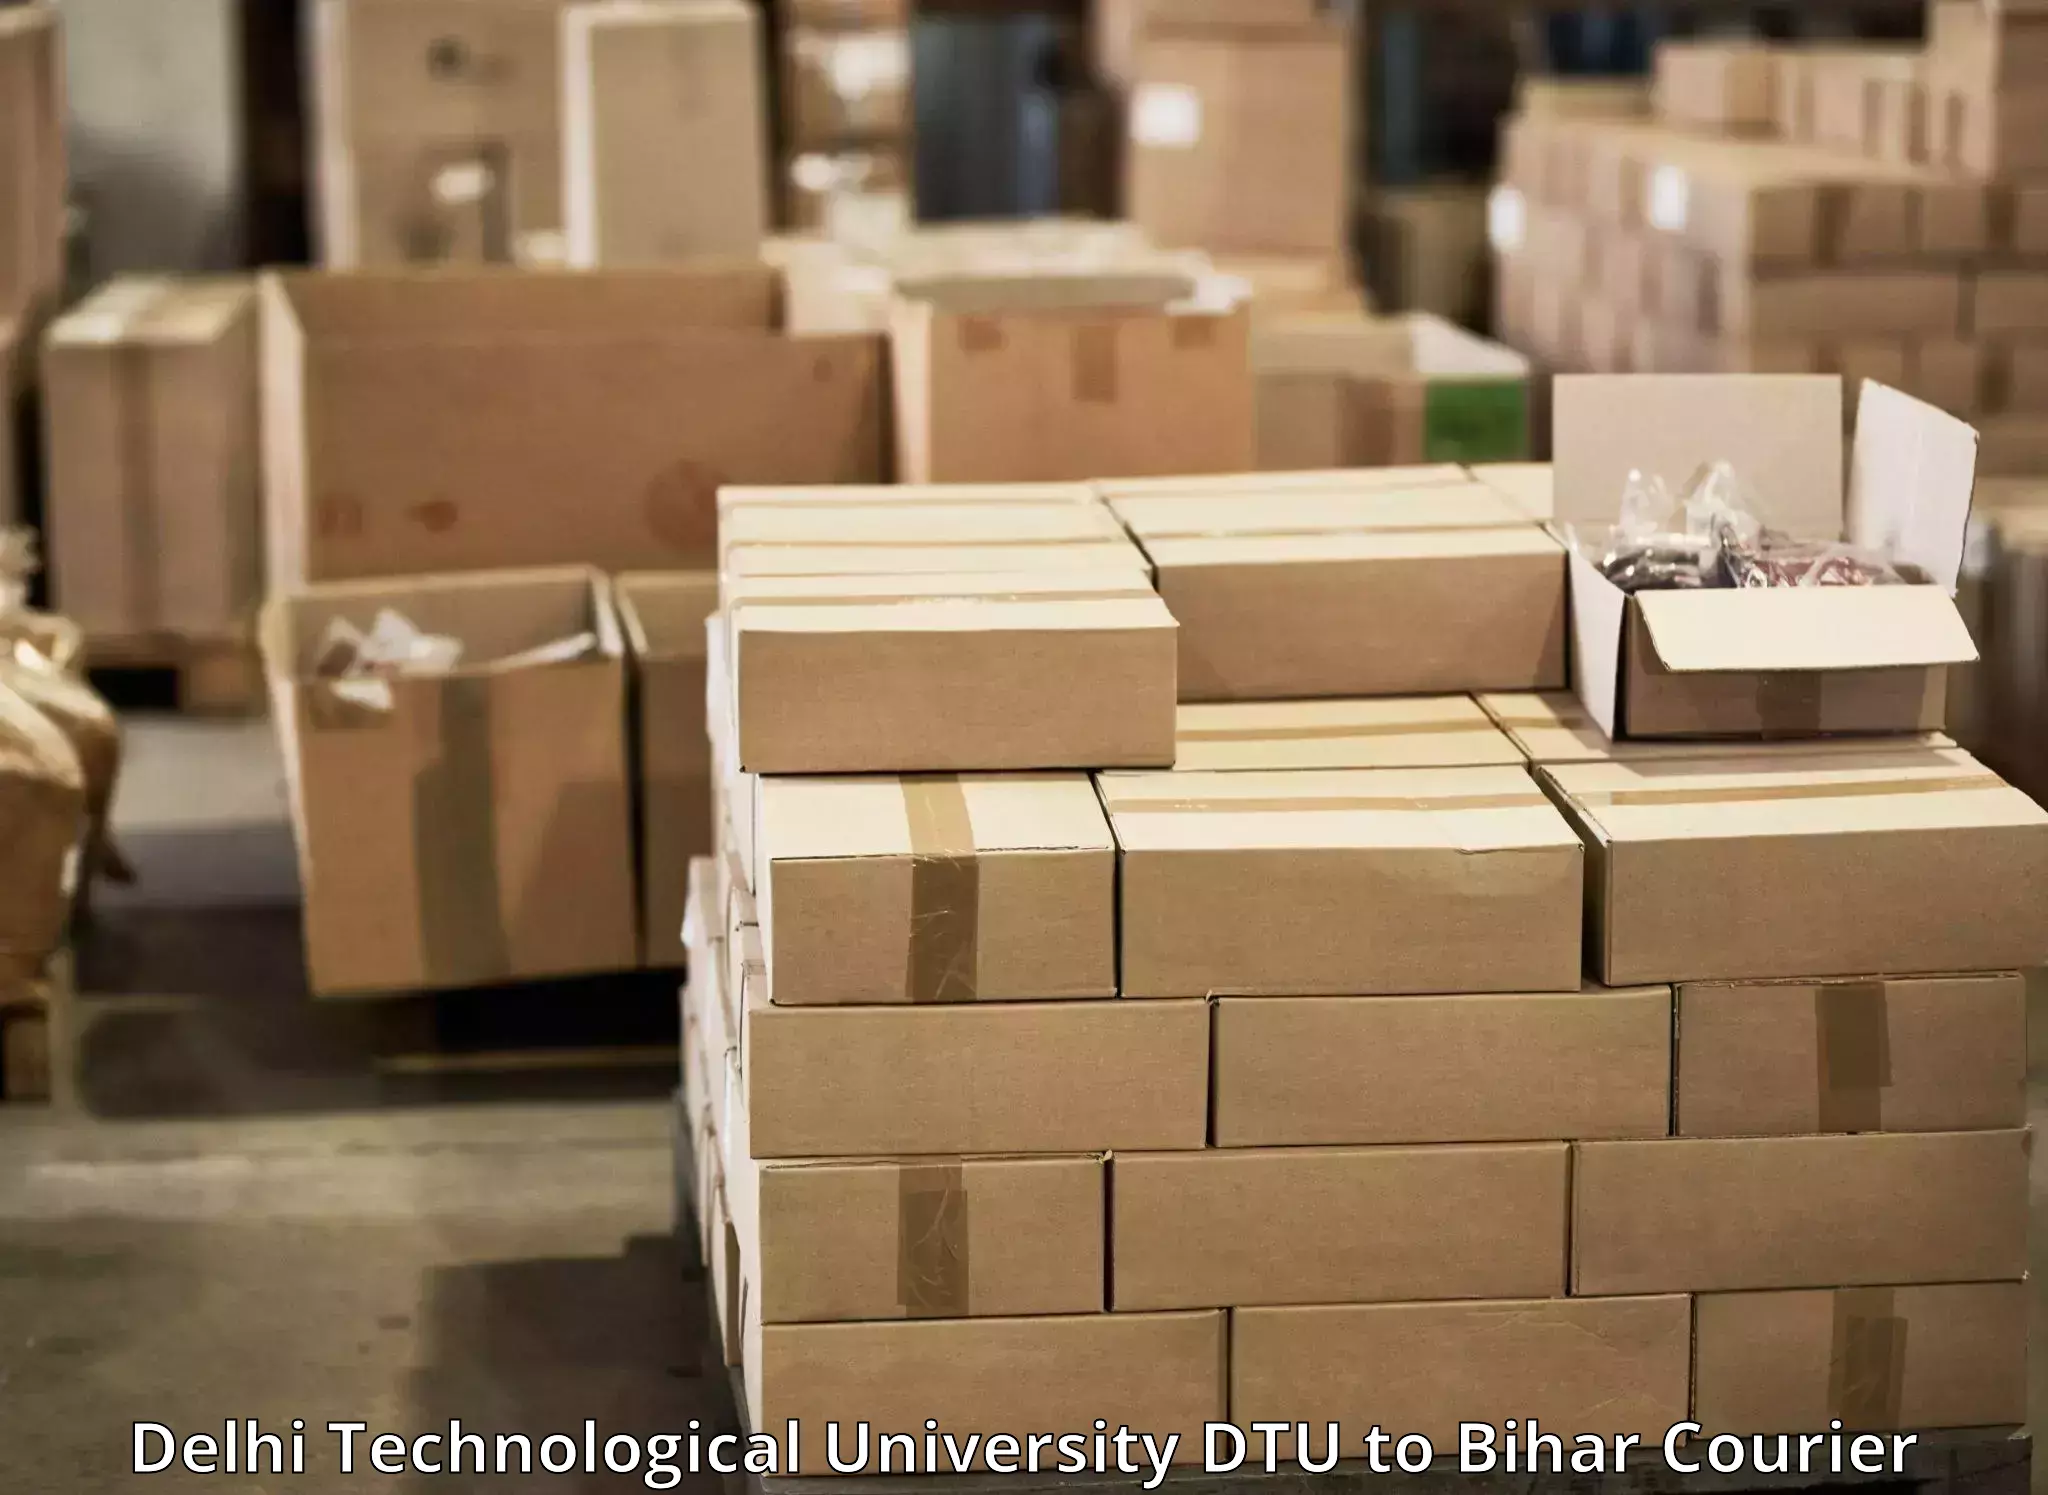 Affordable parcel service Delhi Technological University DTU to Kishanganj